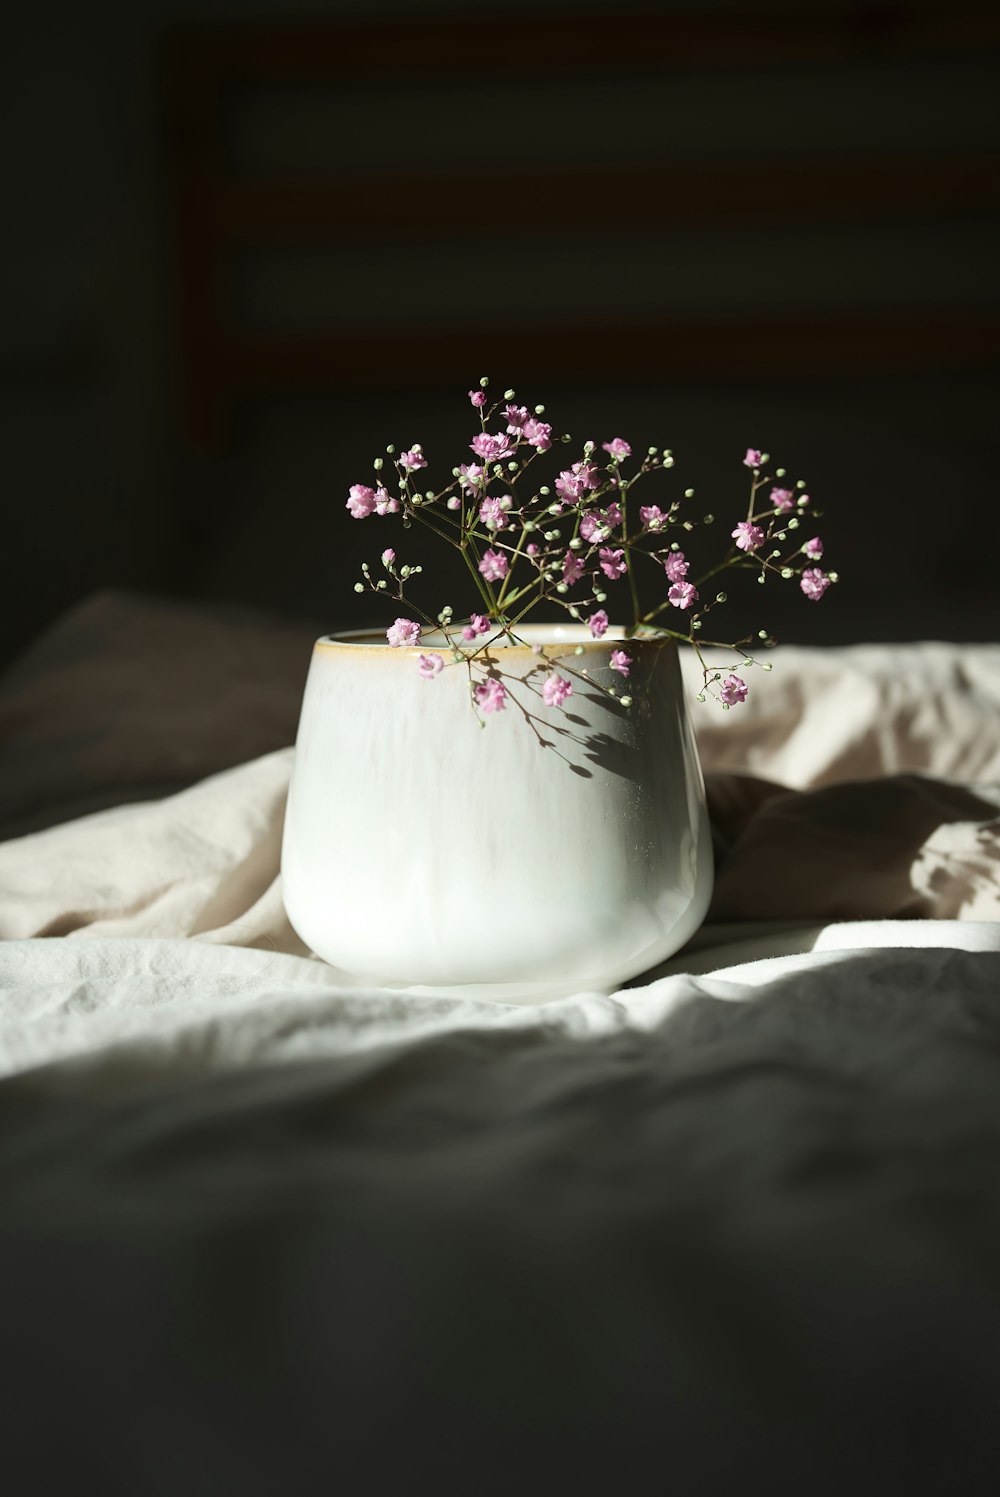 flores blancas en jarrón de cerámica blanca sobre tela blanca